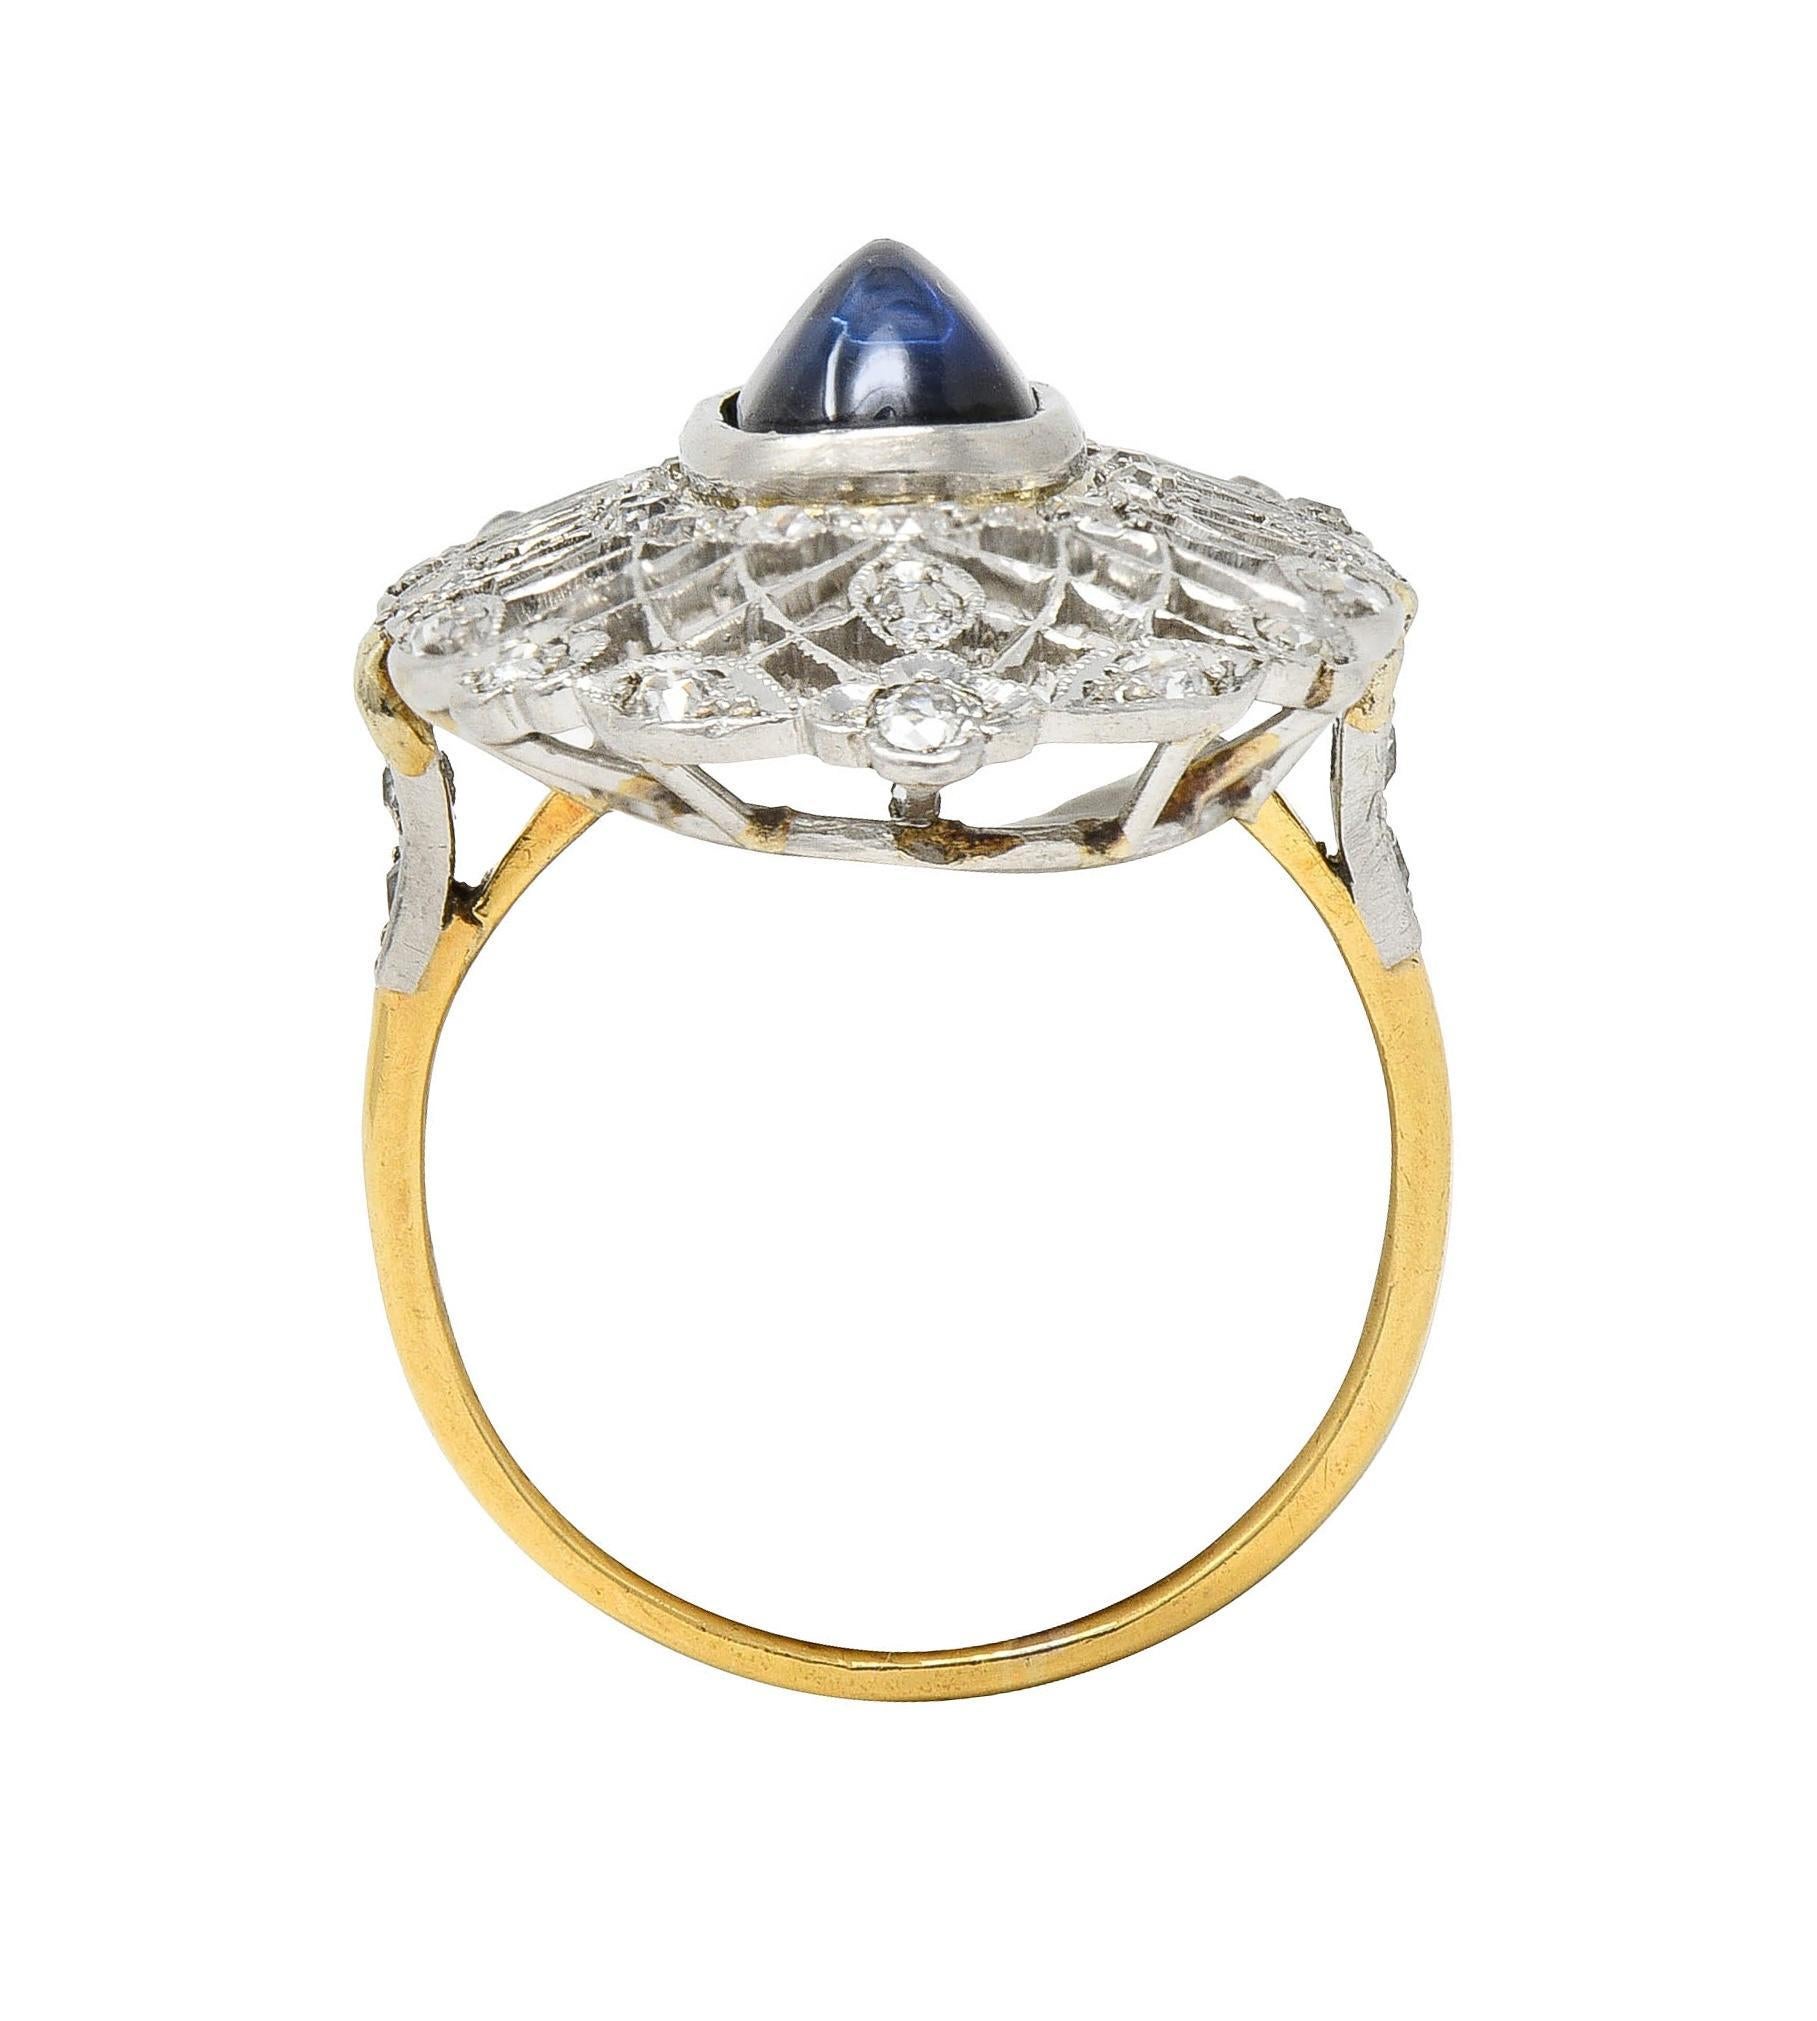 Belle Epoque No Heat Ceylon Sapphire Diamond Platinum 18 Karat Gold Antique Ring For Sale 2